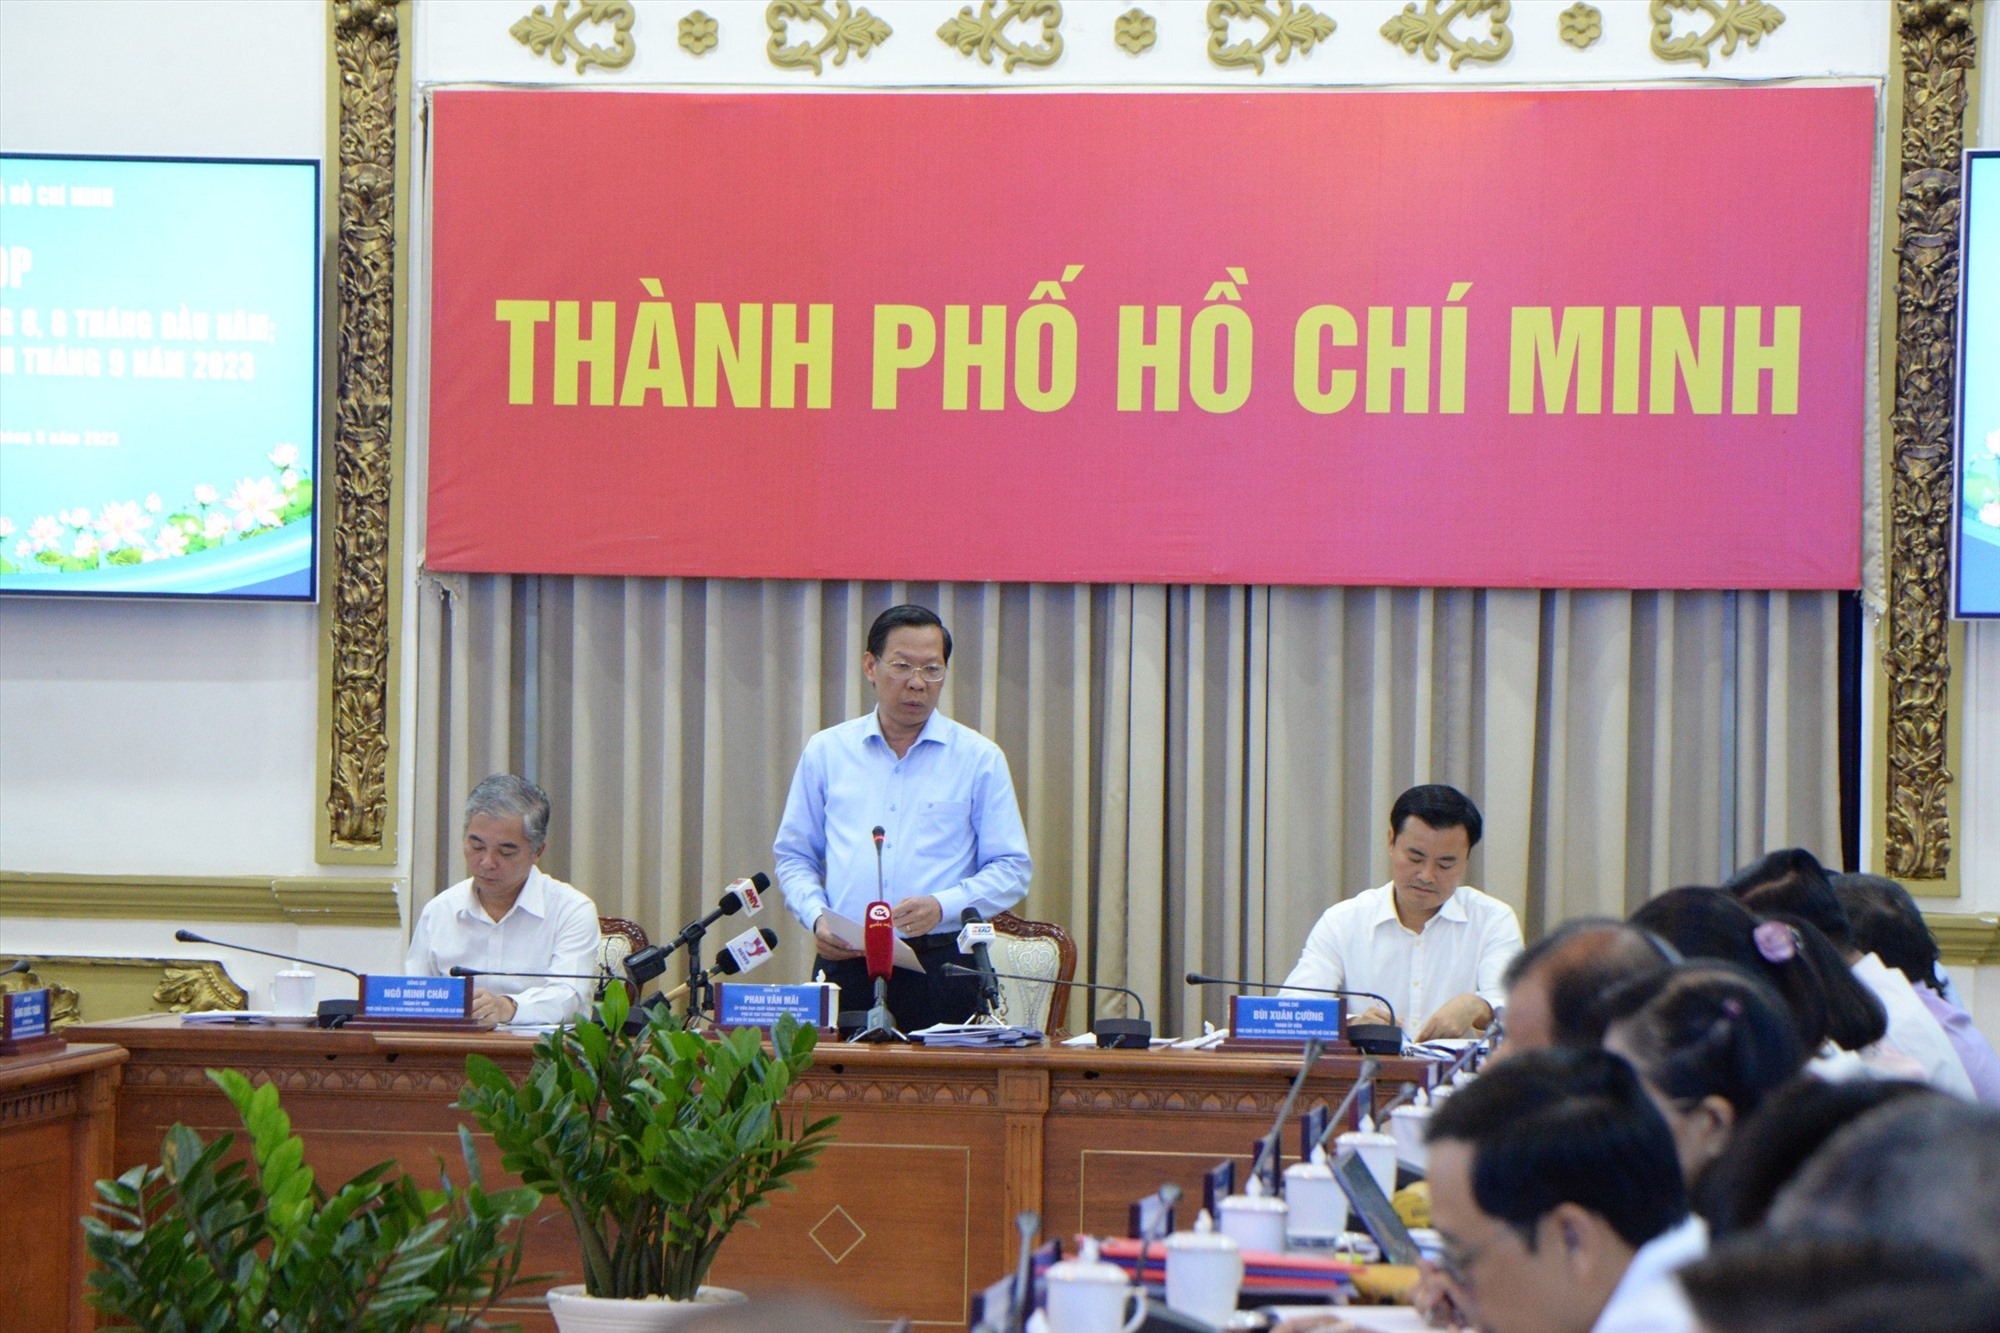 Chủ tịch UBND TPHCM Phan Văn Mãi sốt ruột khi mới giải ngân 28% vốn đầu tư công.  Ảnh: Minh Quân